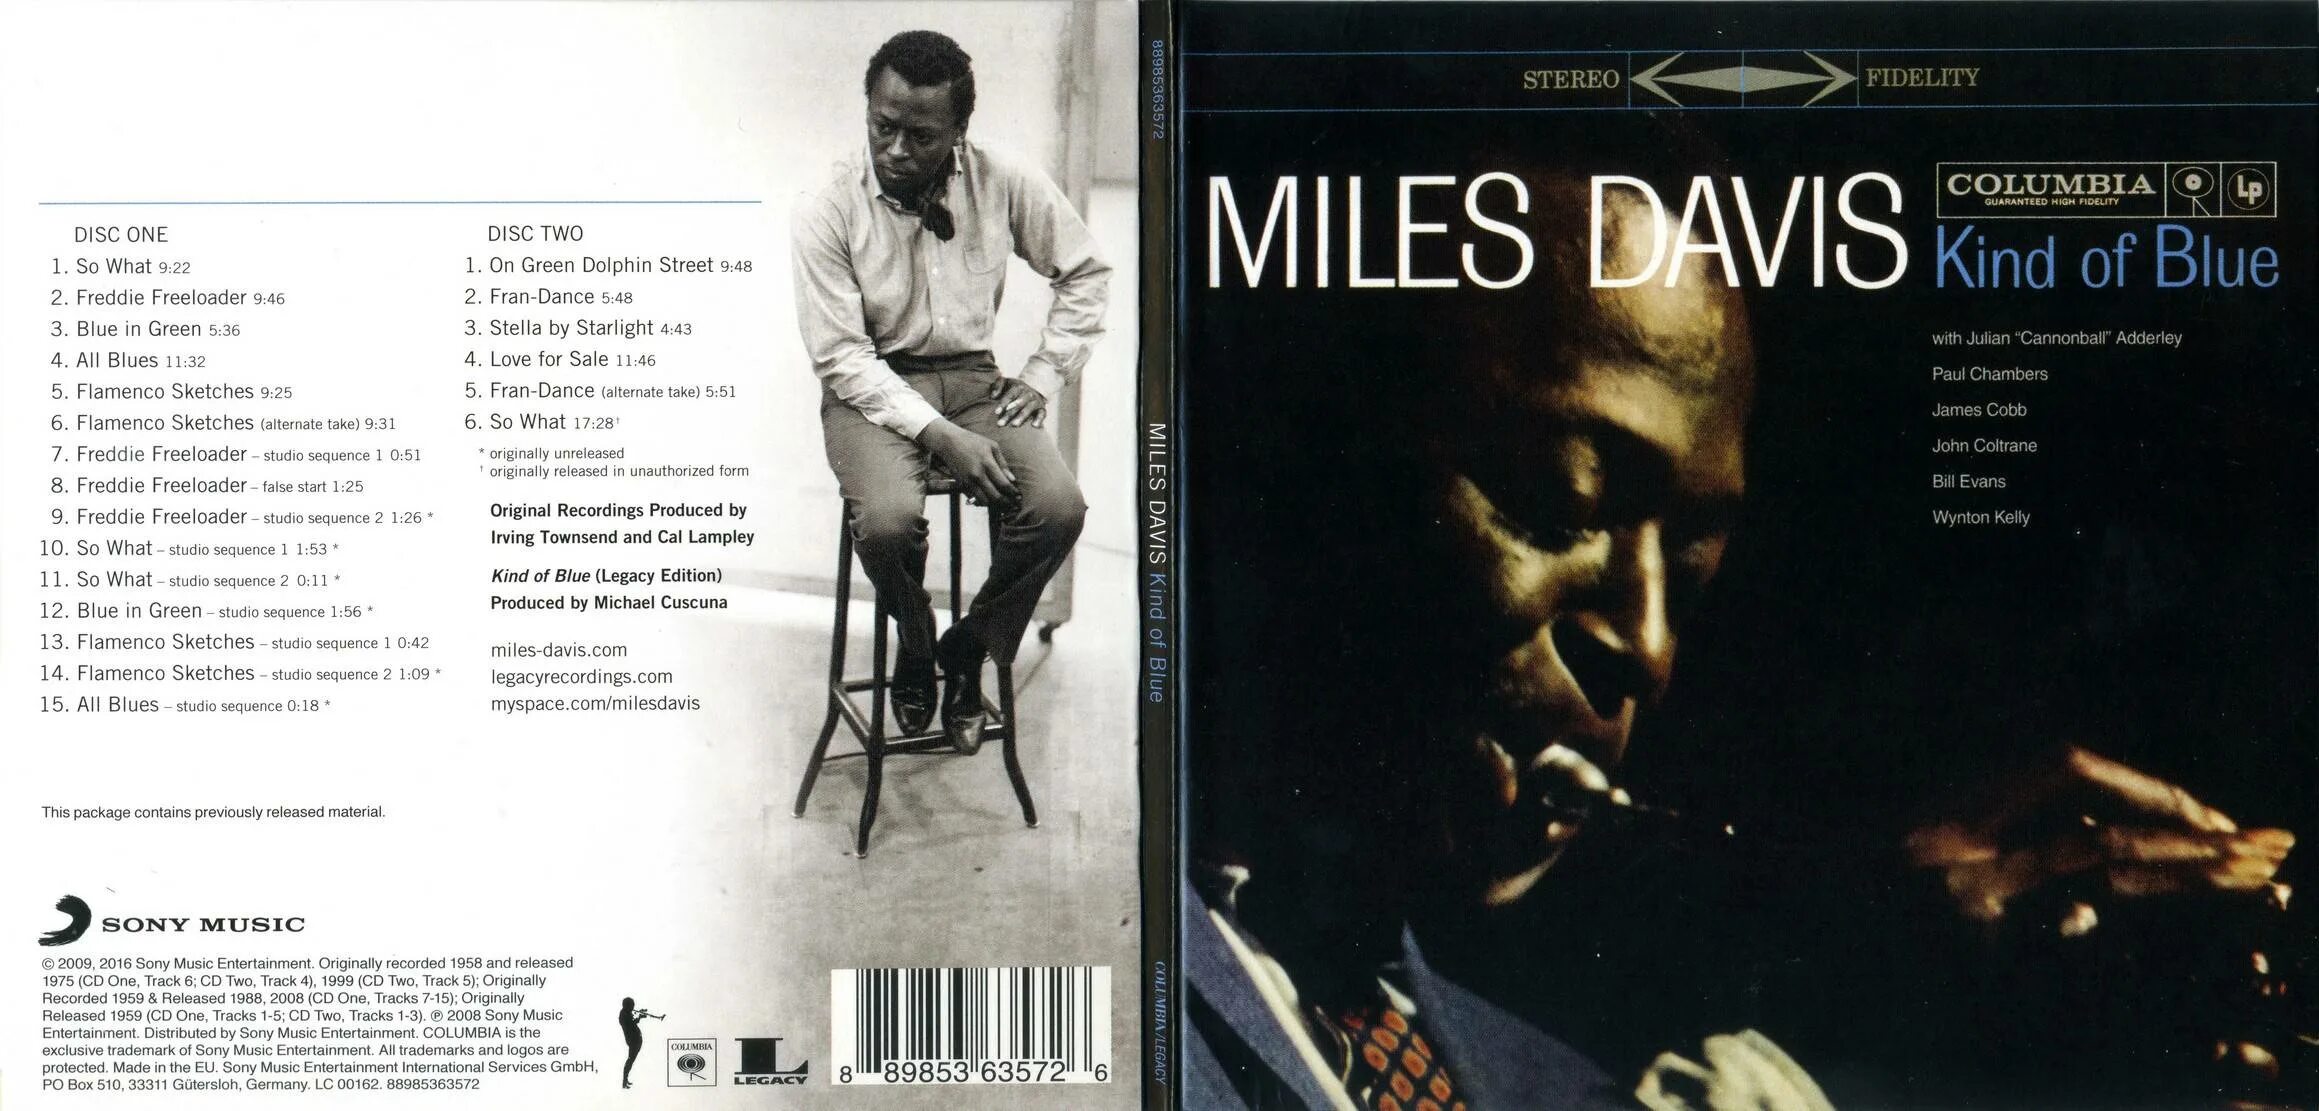 Miles Davis - kind of Blue (1959). Miles Davis kind of Blue обложка. Miles Davis - kind of Blue (Full album) 1959. Miles Davis - Blue in Green год.